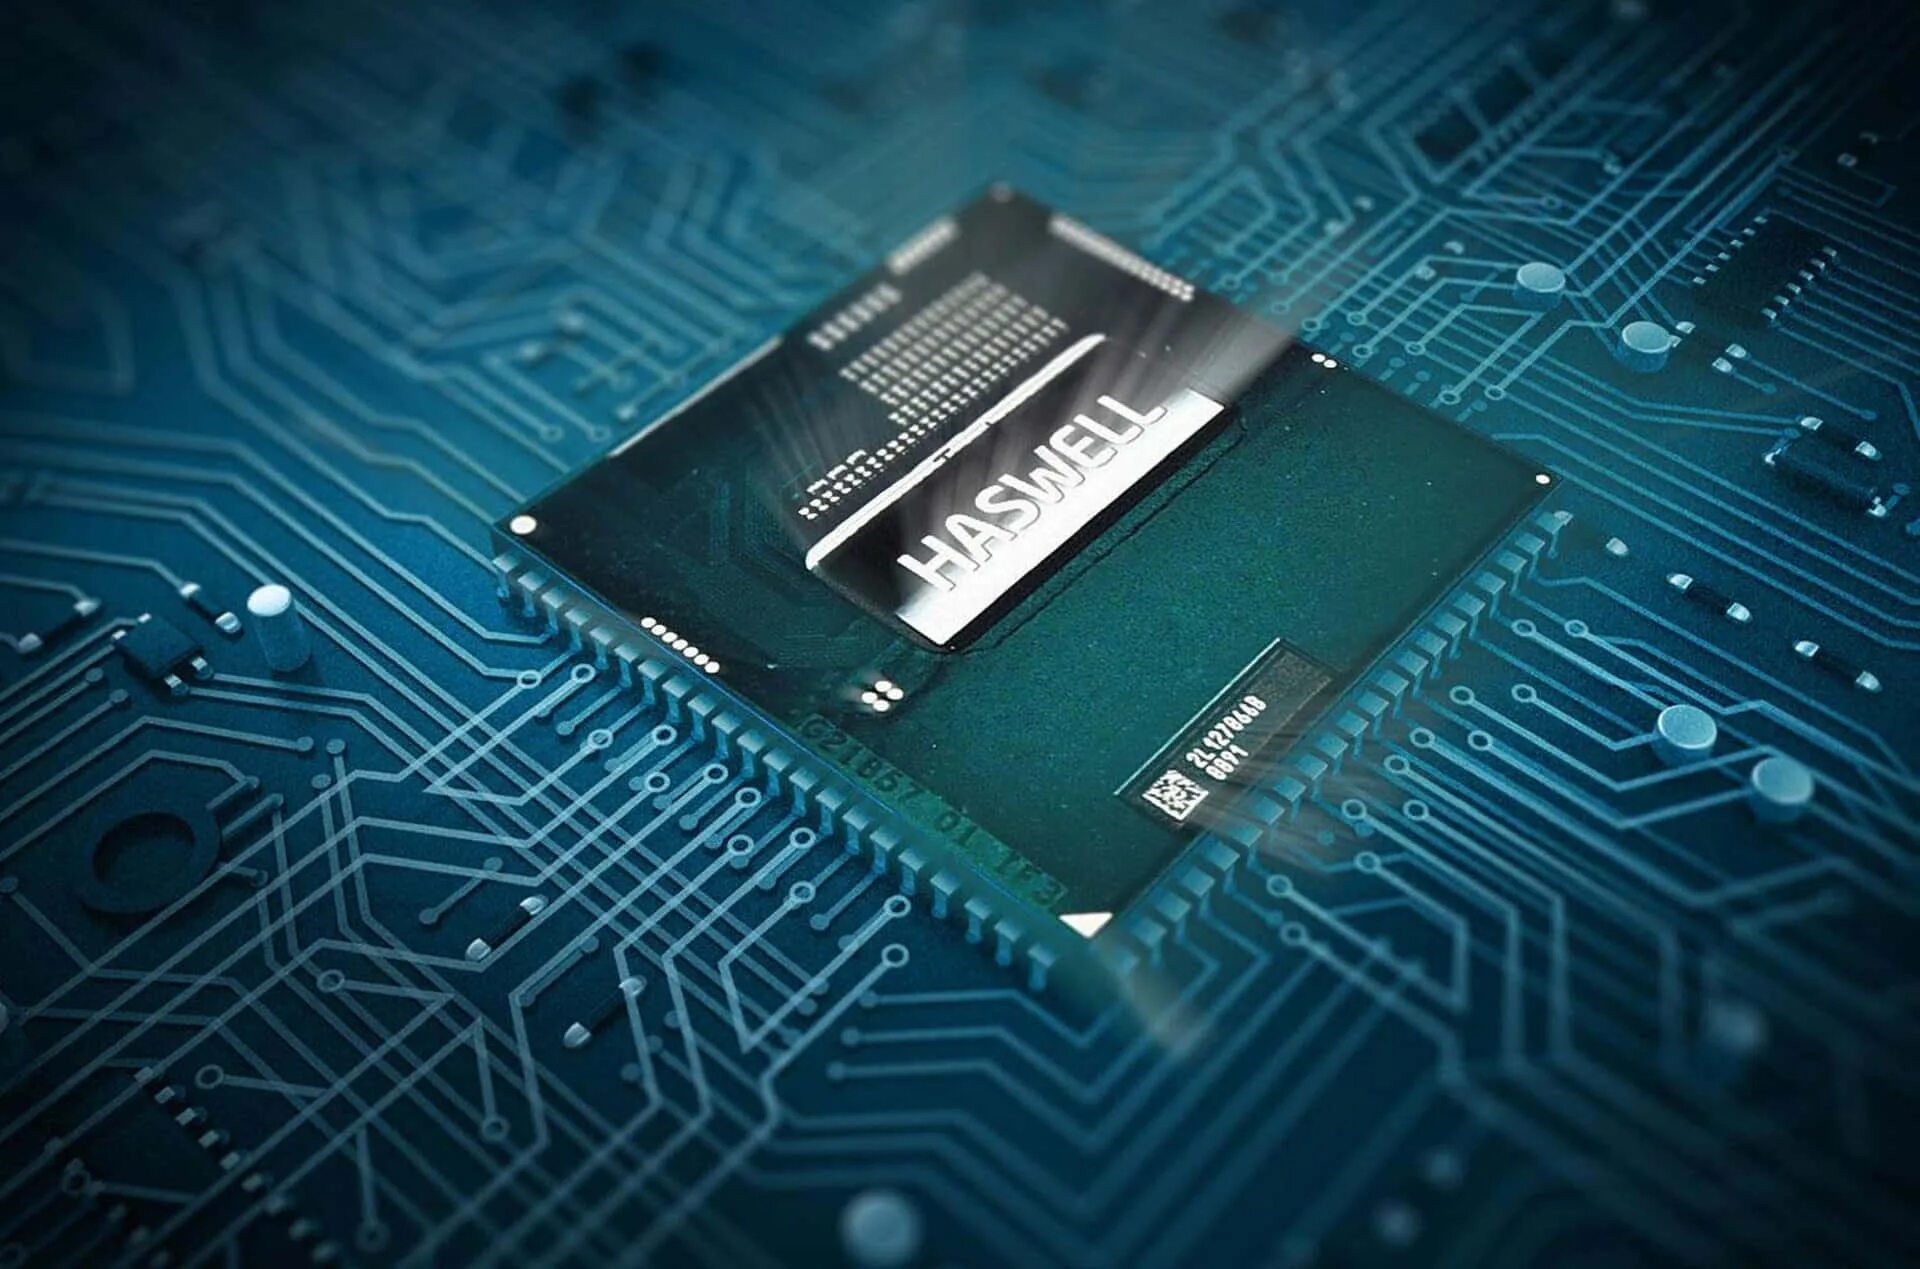 Kompyuter Core i5. Процессоры Хасвелл. Процессор для ноутбука Intel Core i5. Intel HD 4600. Процессор модели памяти